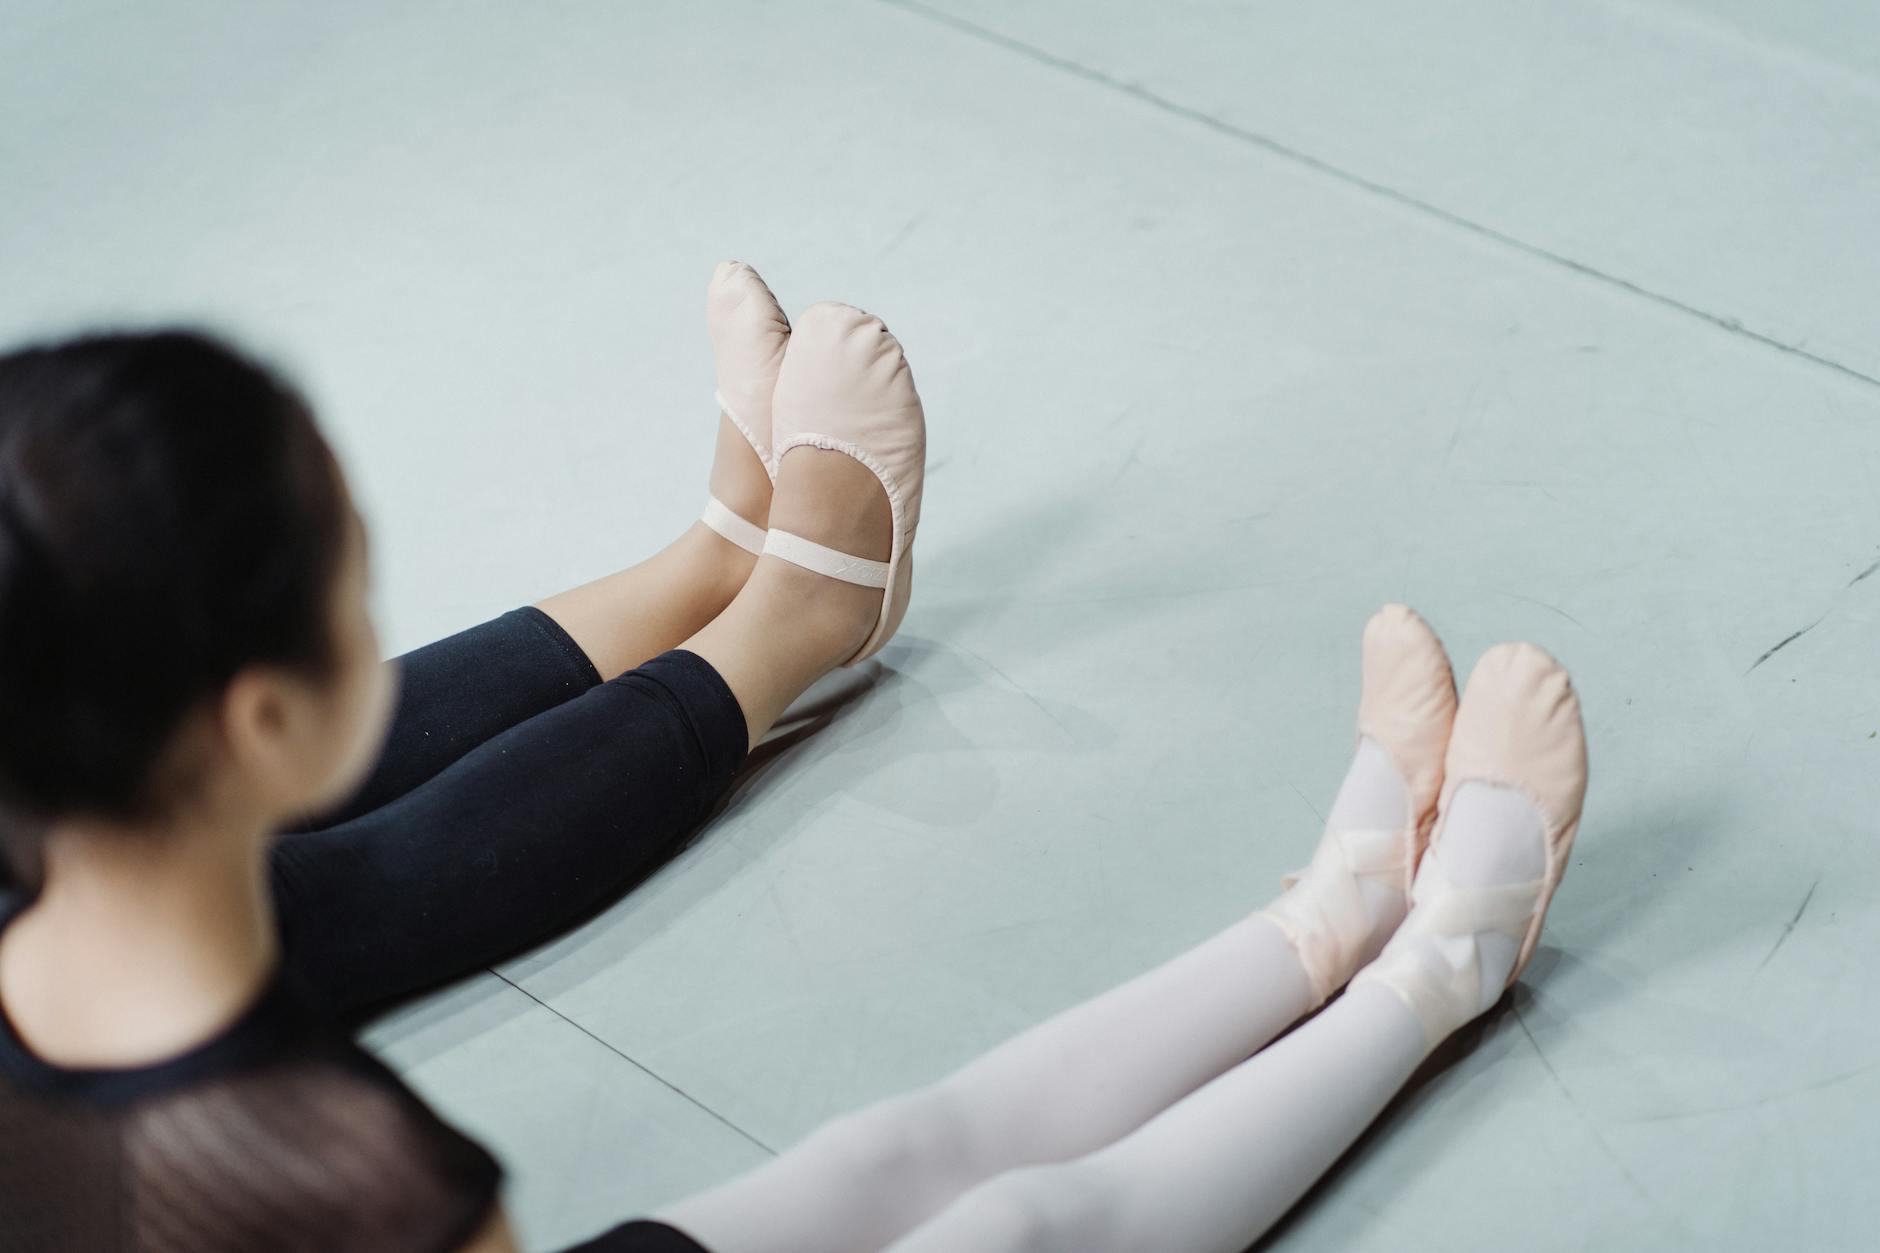 Crop ballerinas in ballet slippers sitting on floor in studio